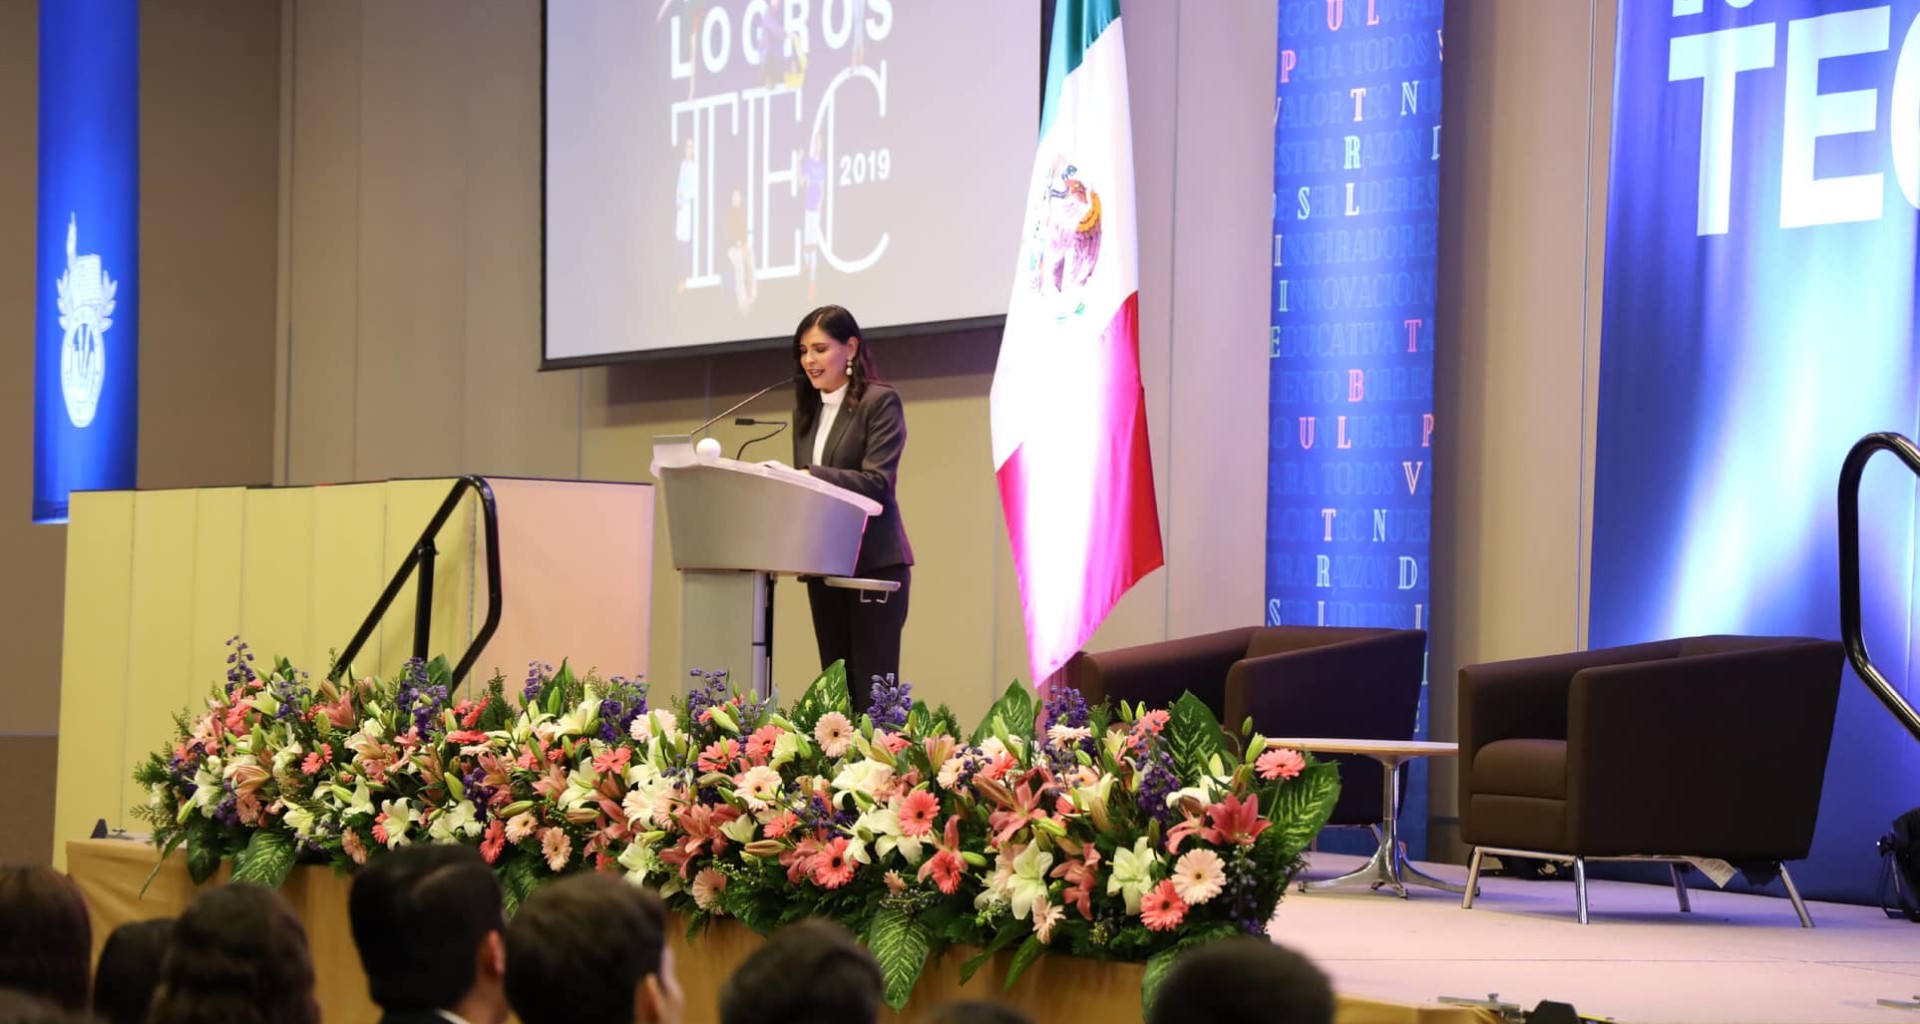 Informe de logros destacados del Tec Guadalajara en 2019